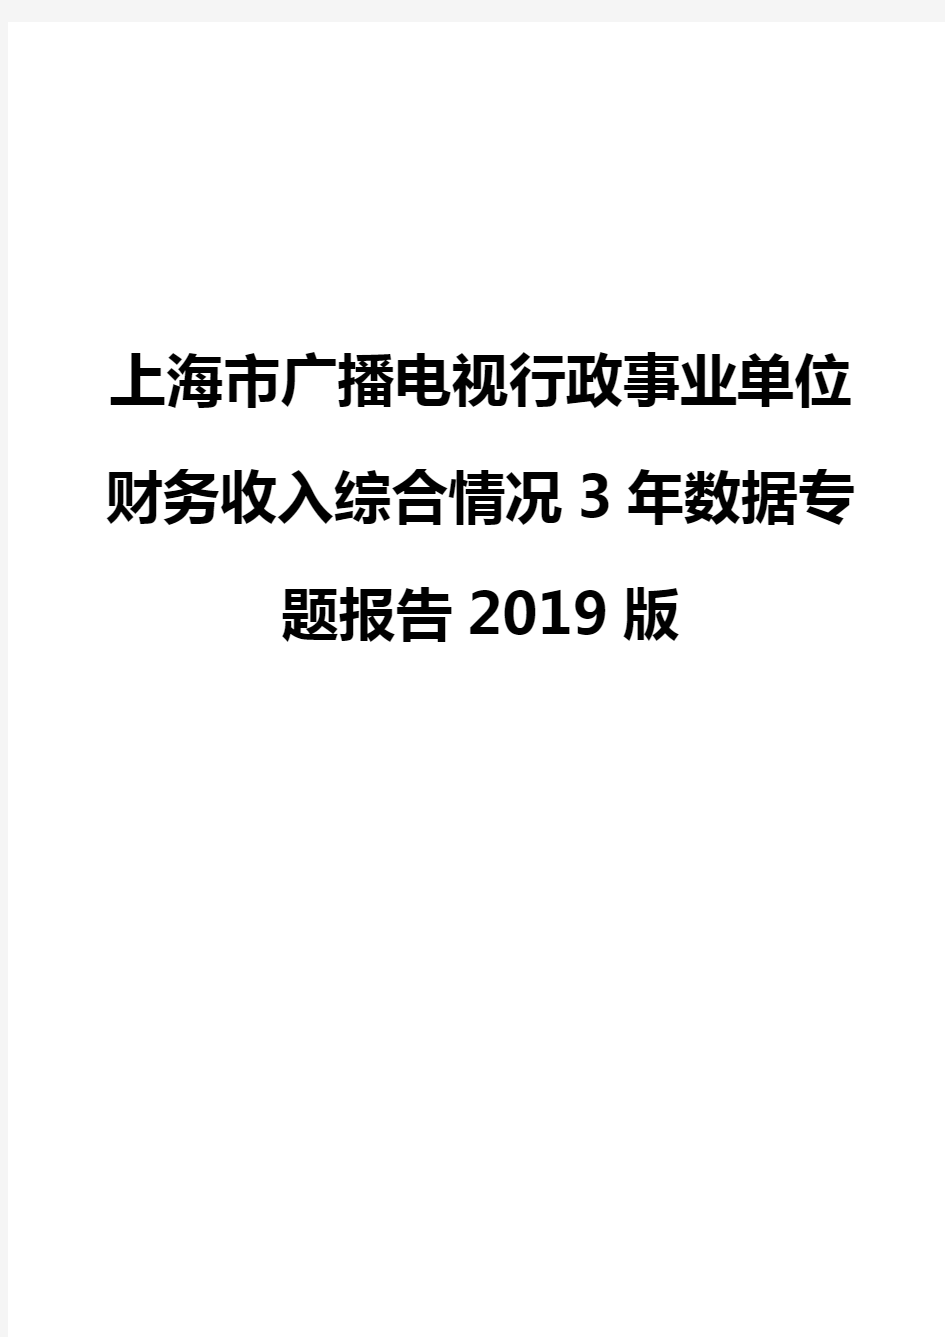 上海市广播电视行政事业单位财务收入综合情况3年数据专题报告2019版